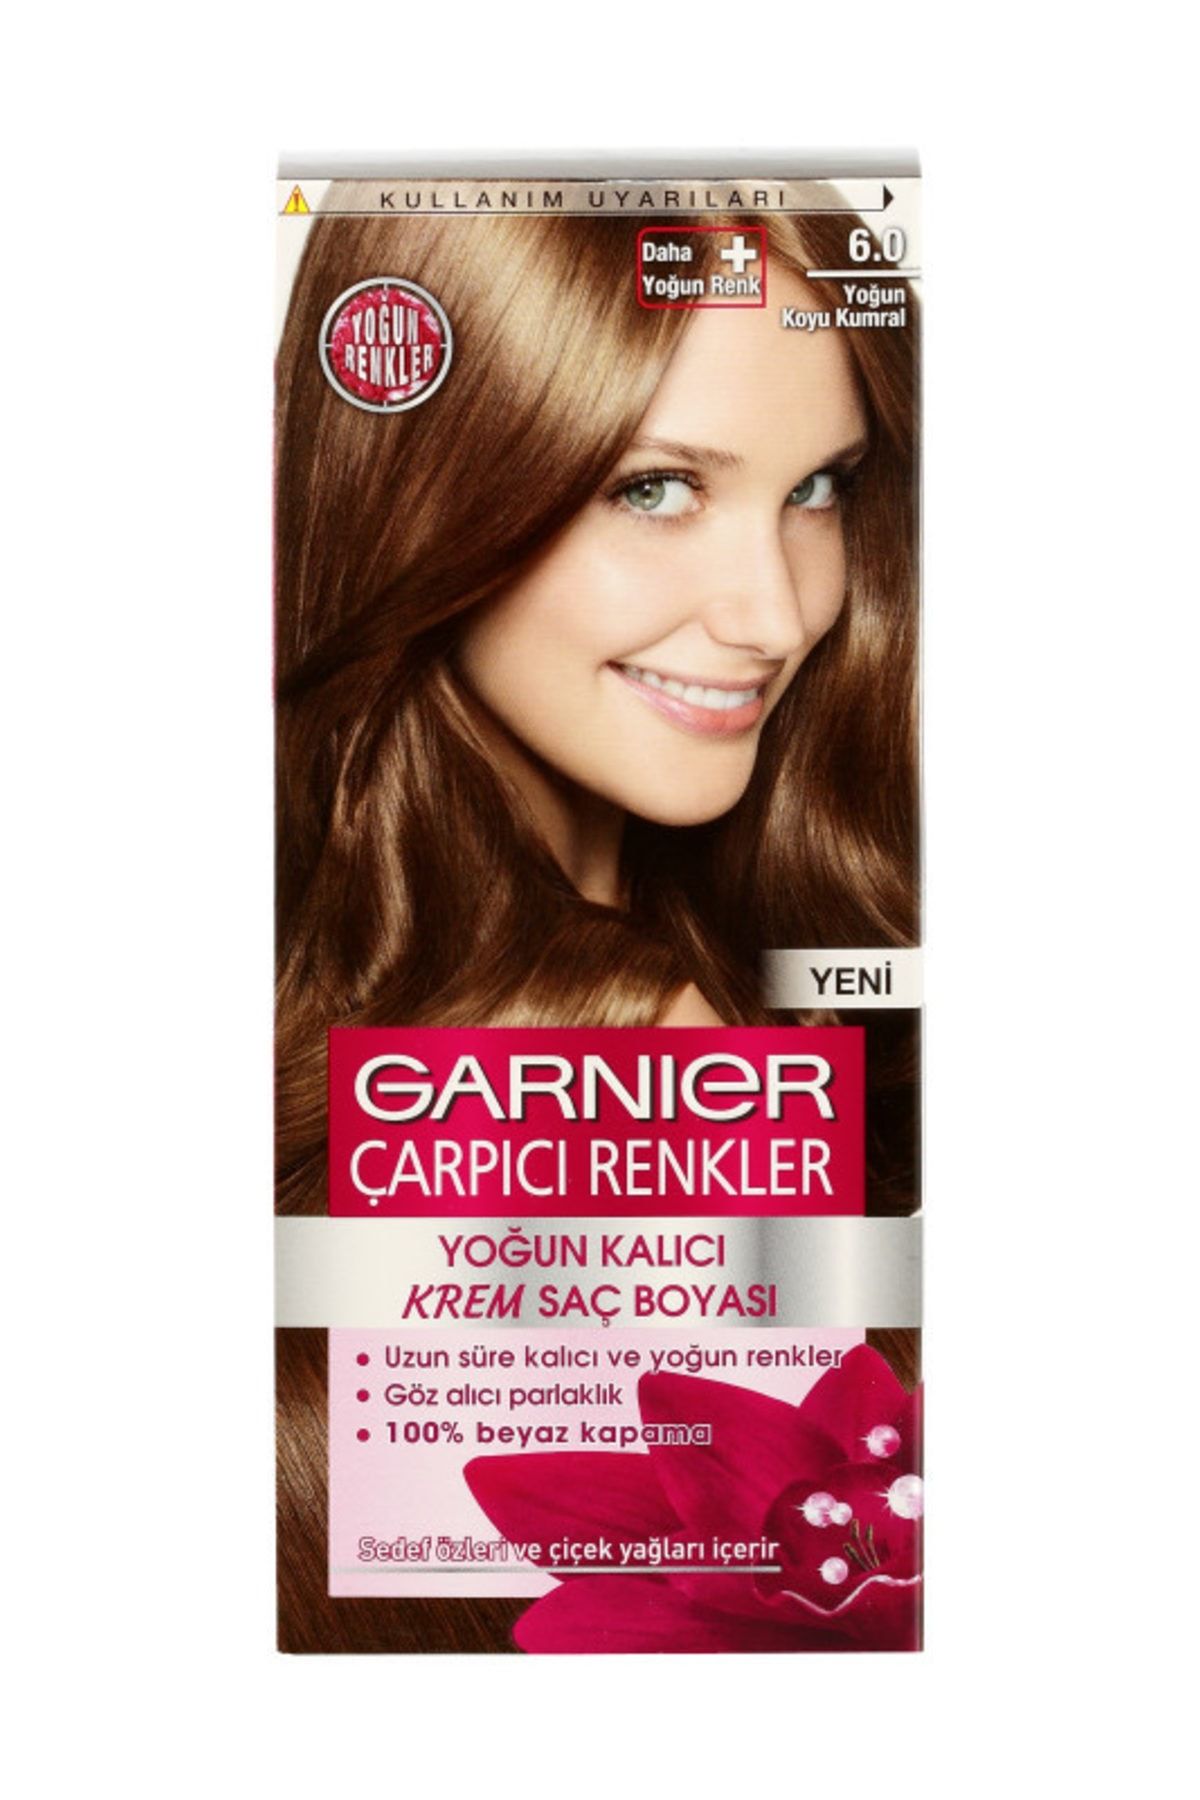 Garnier Çarpıcı Renkler No 6.0 Yoğun Koyu Kumral